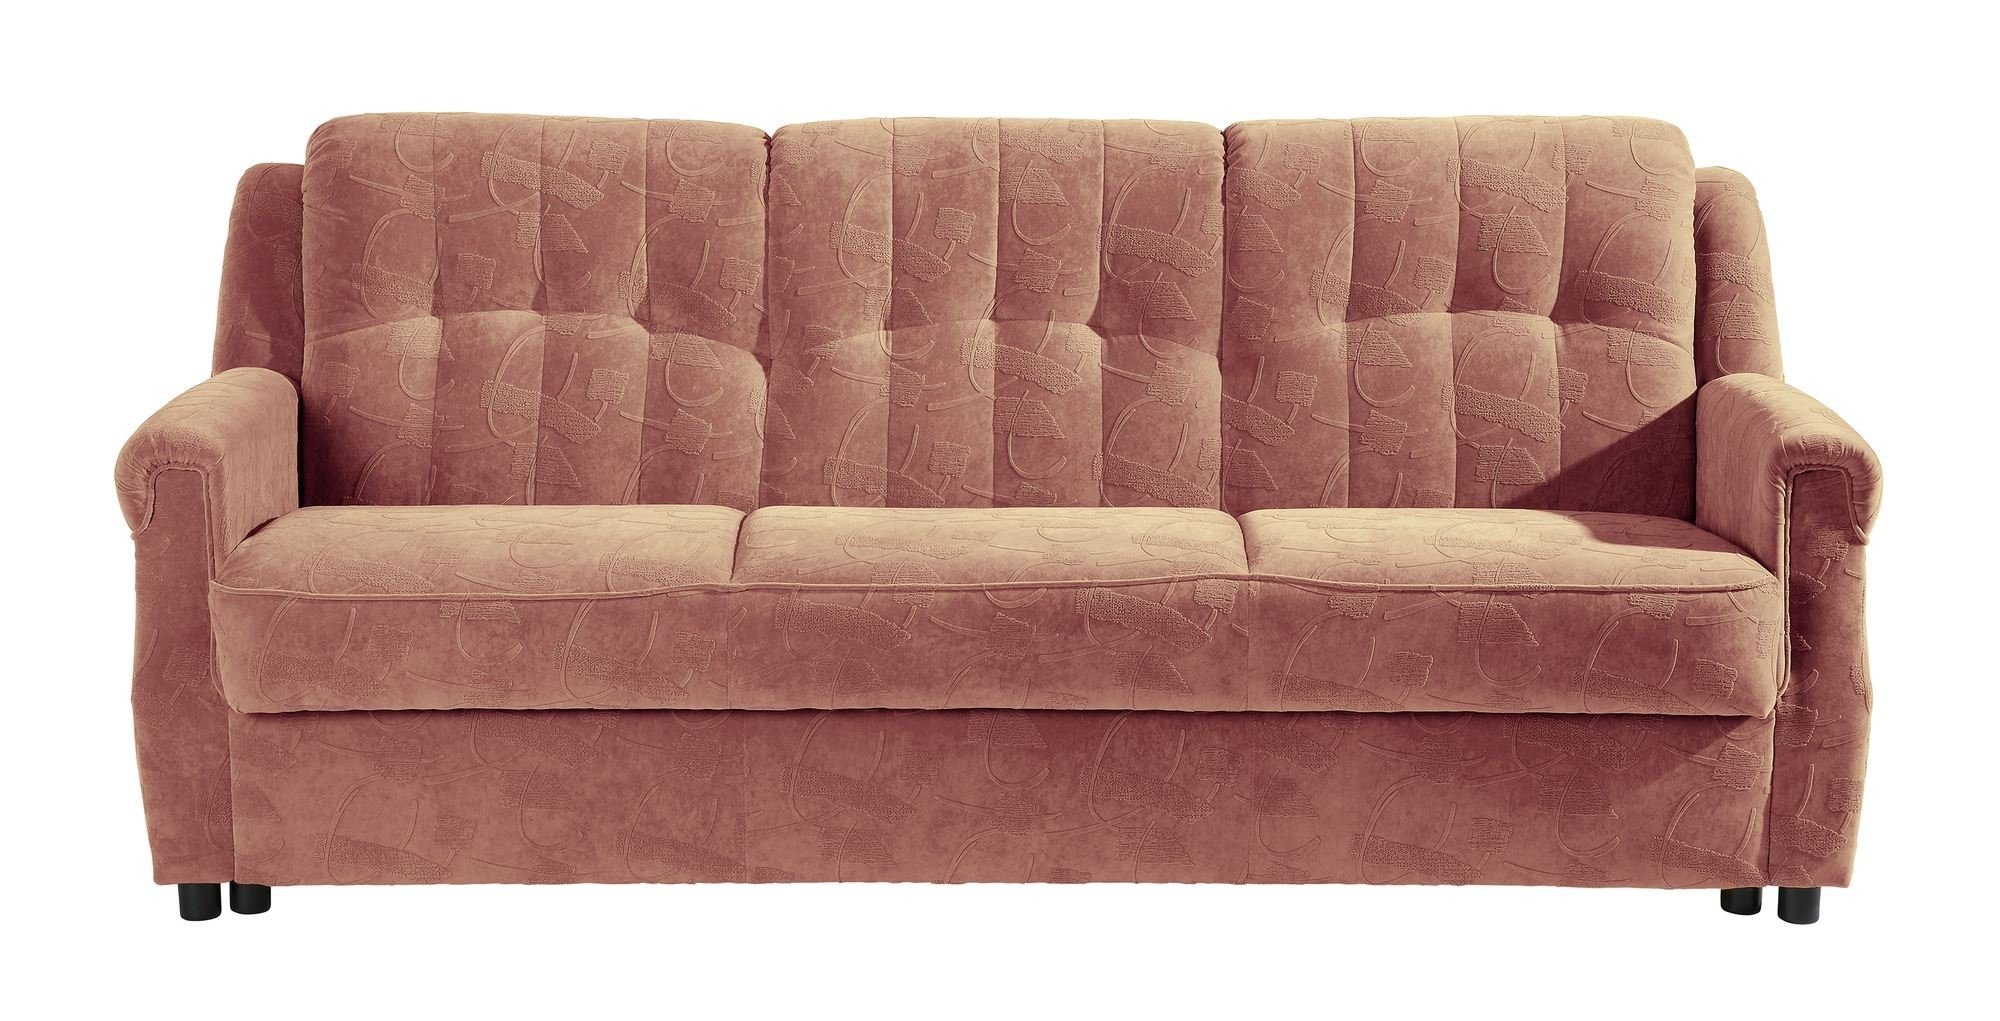 Microf, inkl. Teile, hochwertig 58 Karuna Kessel Bettfunktion Sofa verarbeitet,bequemer aufm Bezug Sitz Sofa Kostenlosem Sparpreis Versand 3-Sitzer 1 mit